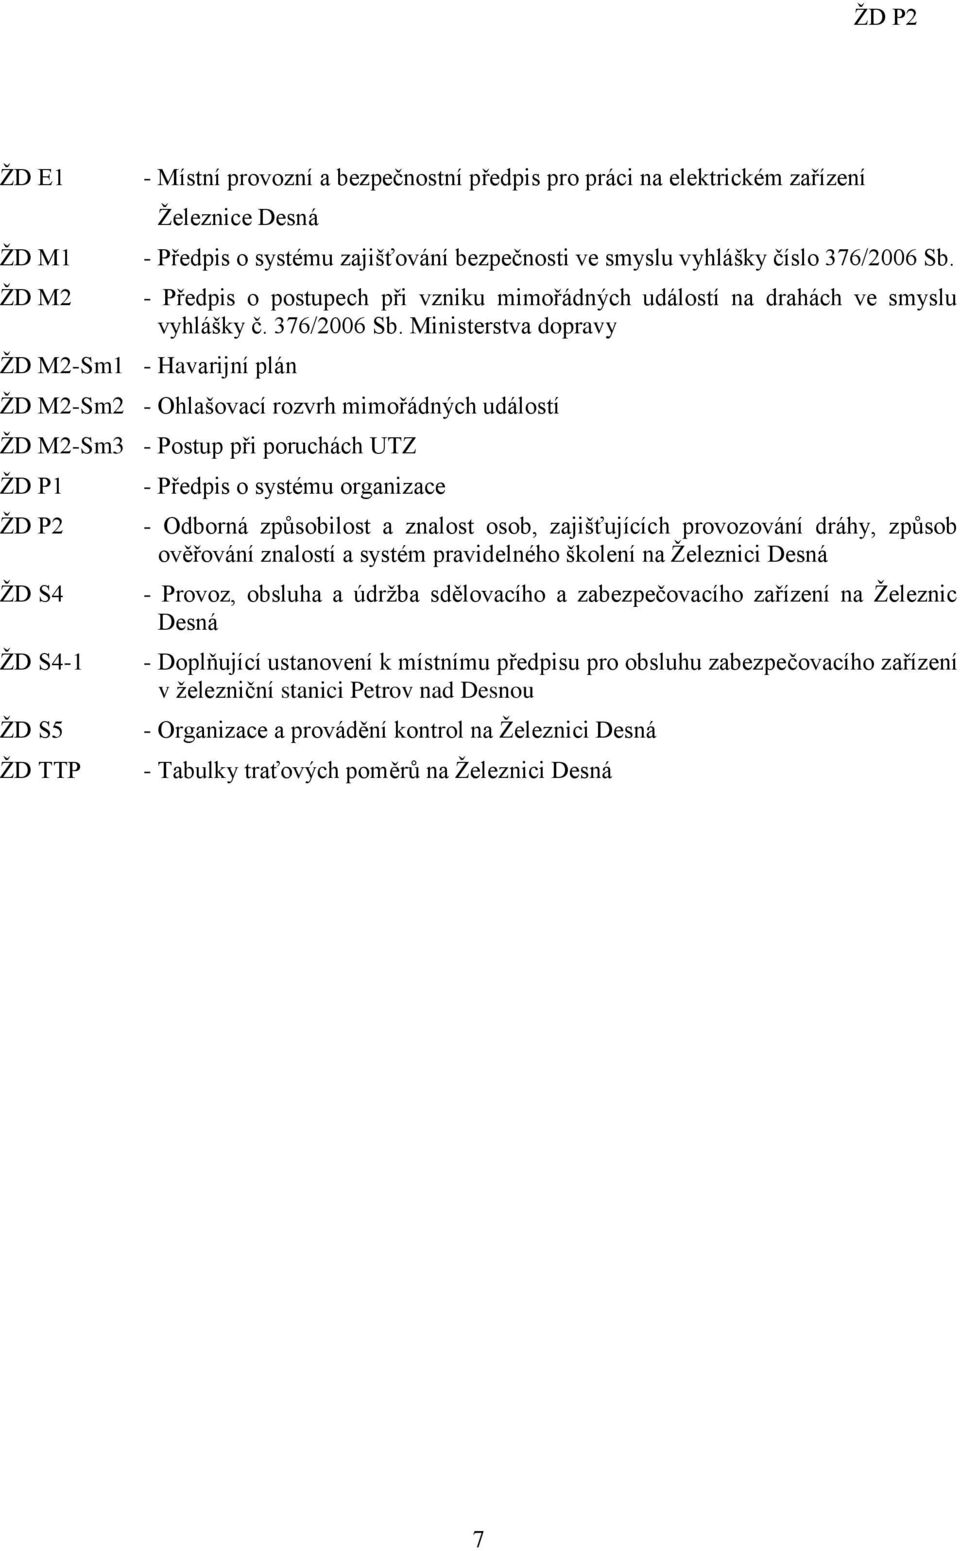 Ministerstva dopravy ŽD M2-Sm1 - Havarijní plán ŽD M2-Sm2 - Ohlašovací rozvrh mimořádných událostí ŽD M2-Sm3 - Postup při poruchách UTZ ŽD P1 ŽD P2 ŽD S4 ŽD S4-1 ŽD S5 ŽD TTP - Předpis o systému